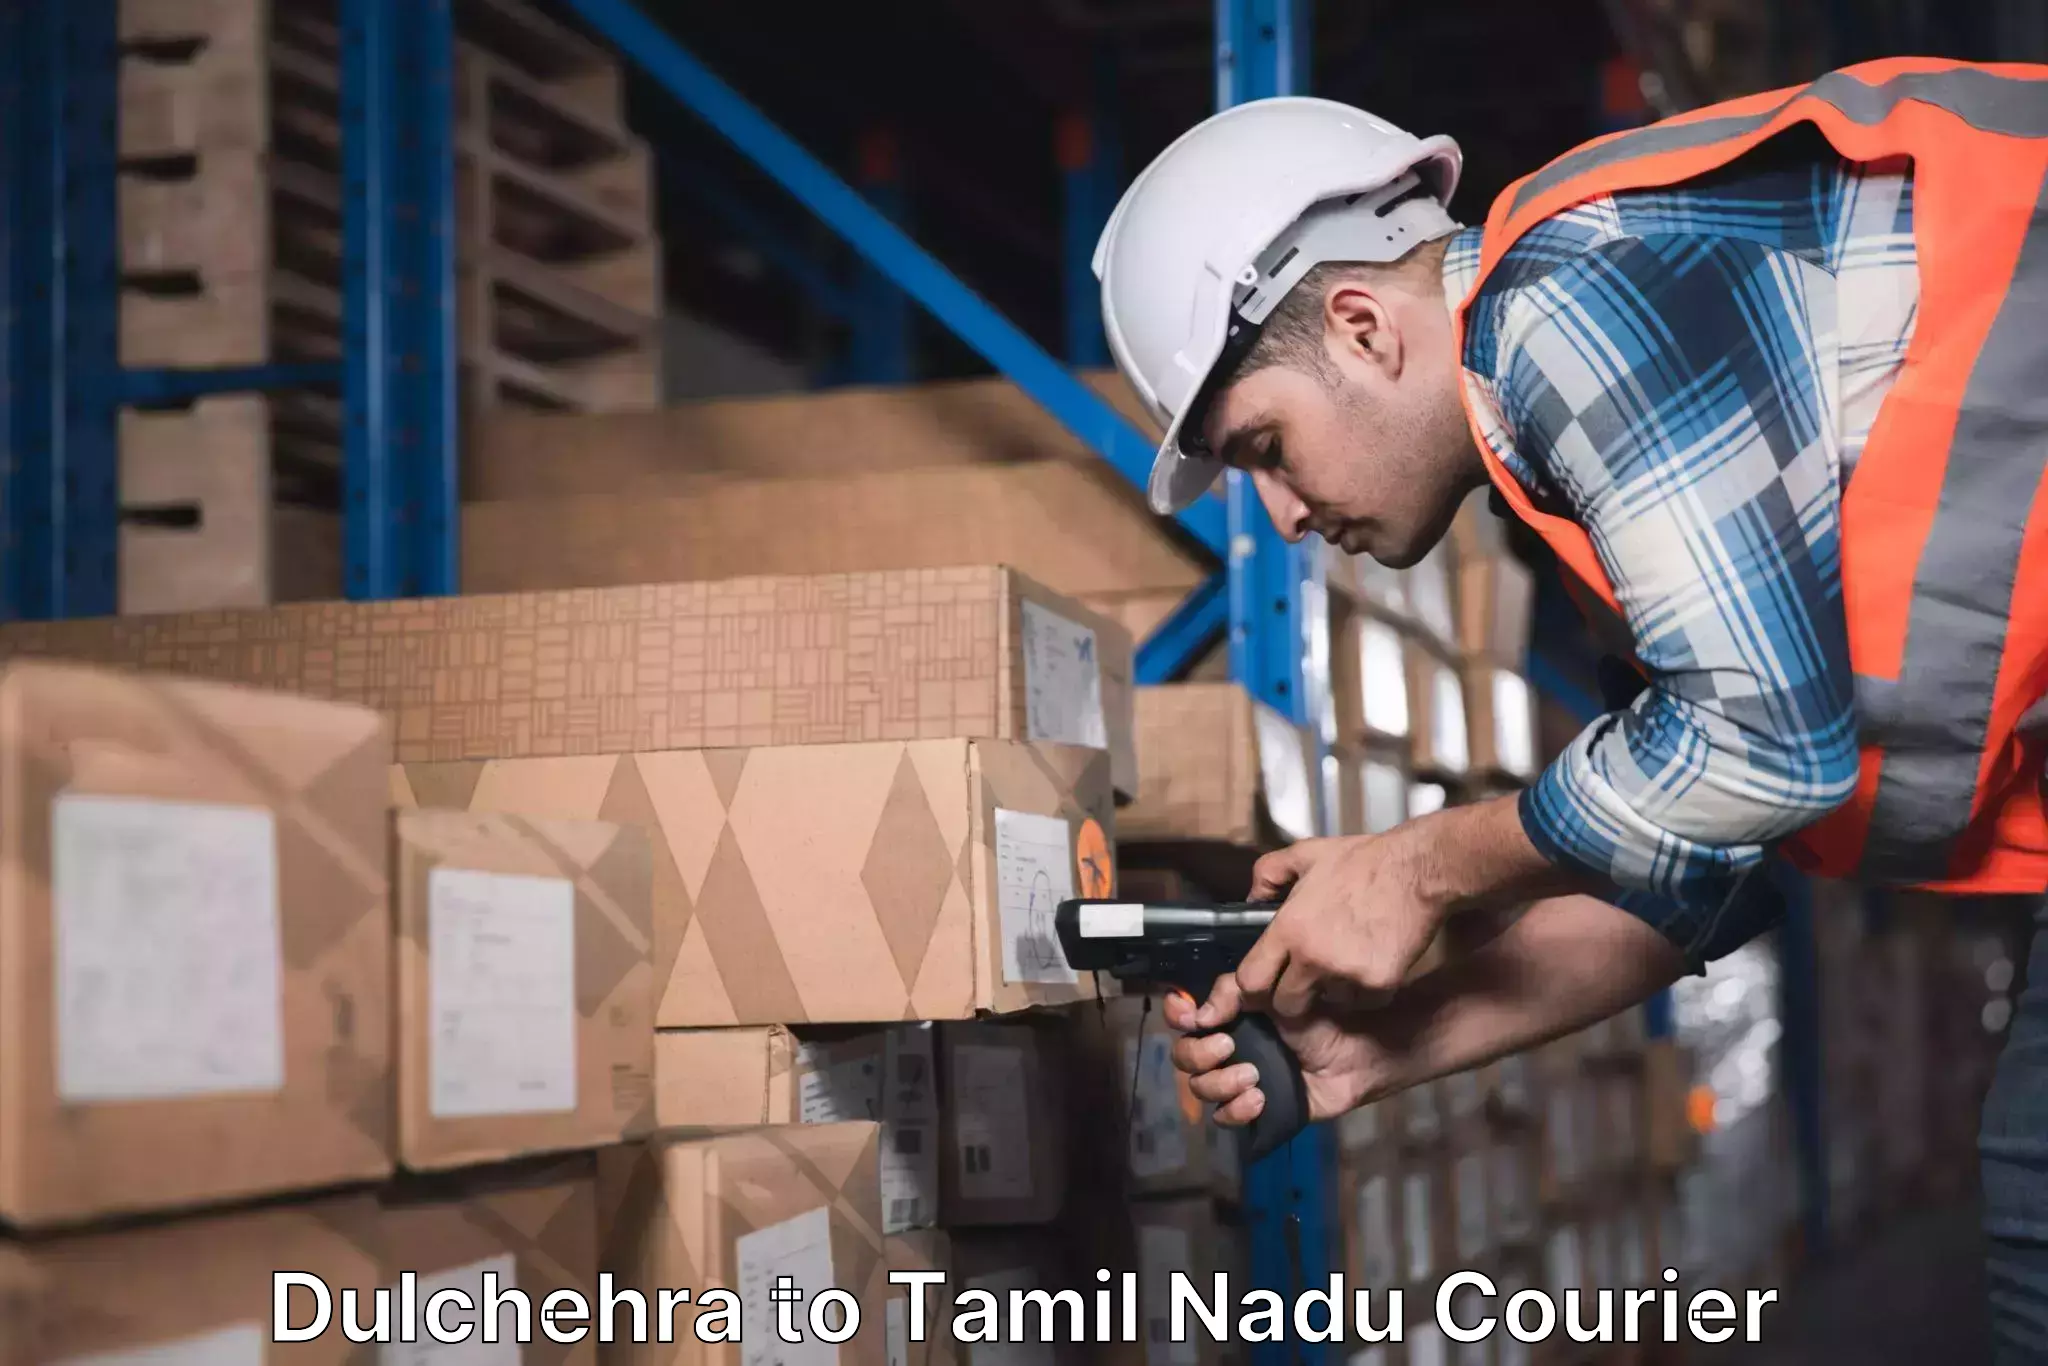 Express logistics providers Dulchehra to Tamil Nadu